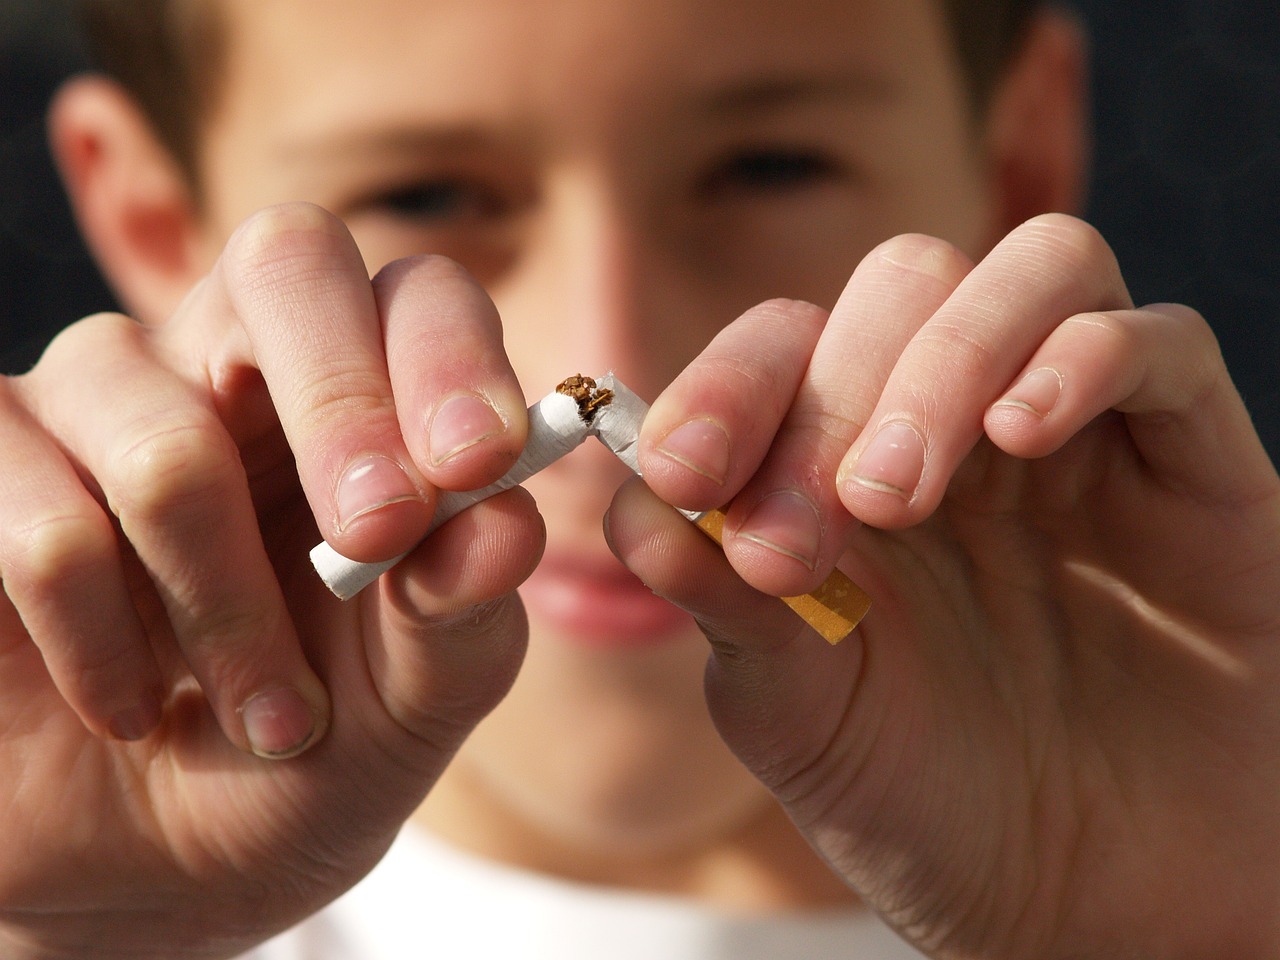 Consommation de tabac chez les adolescents